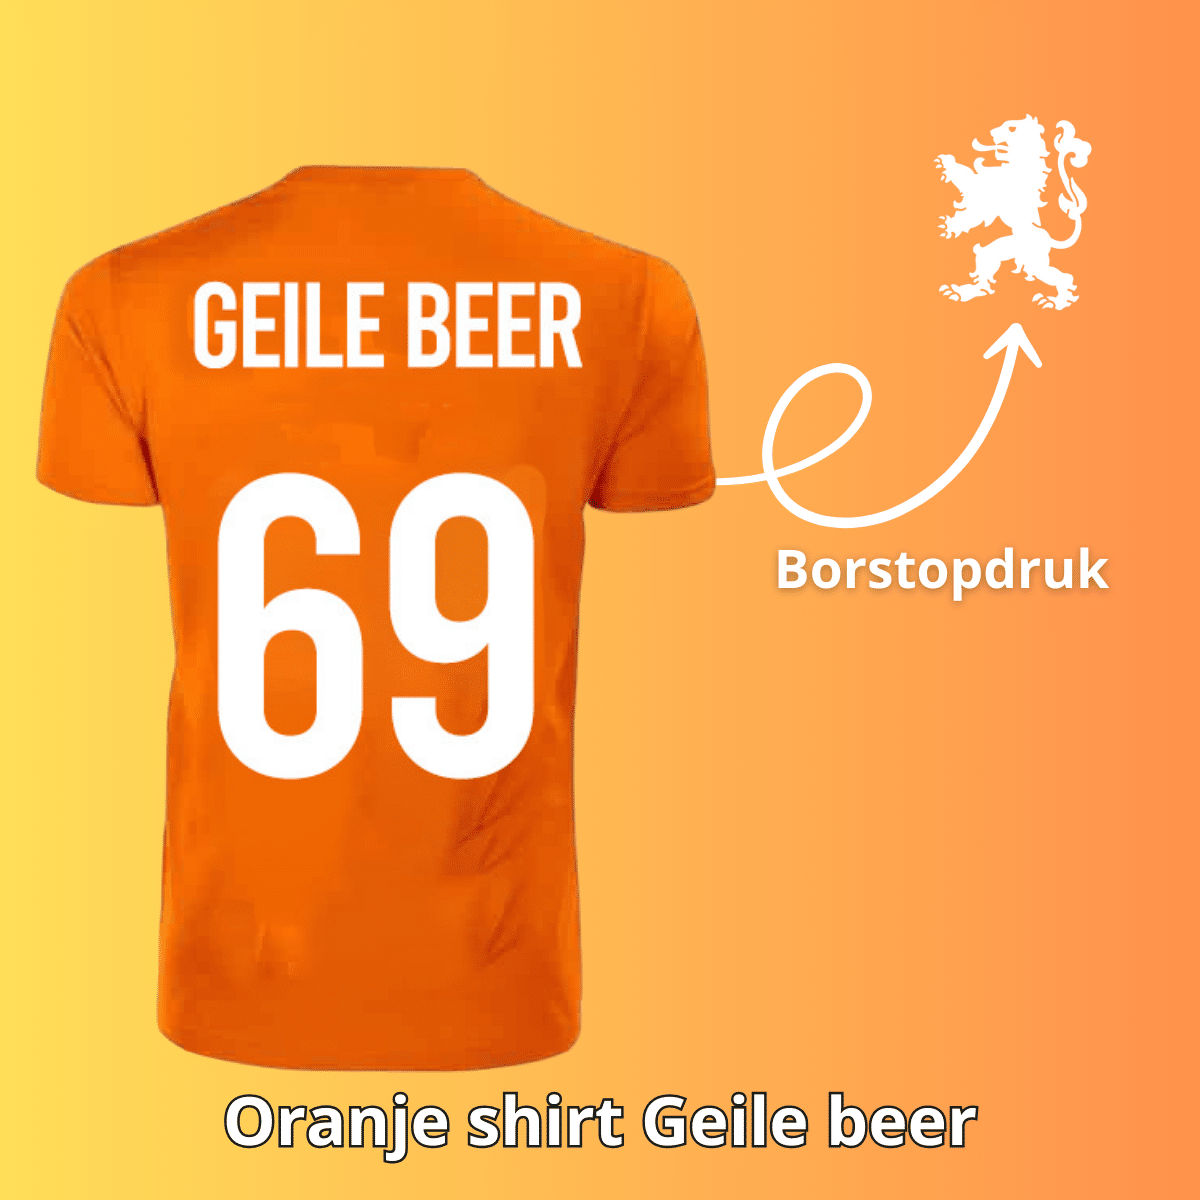 Geile Beer